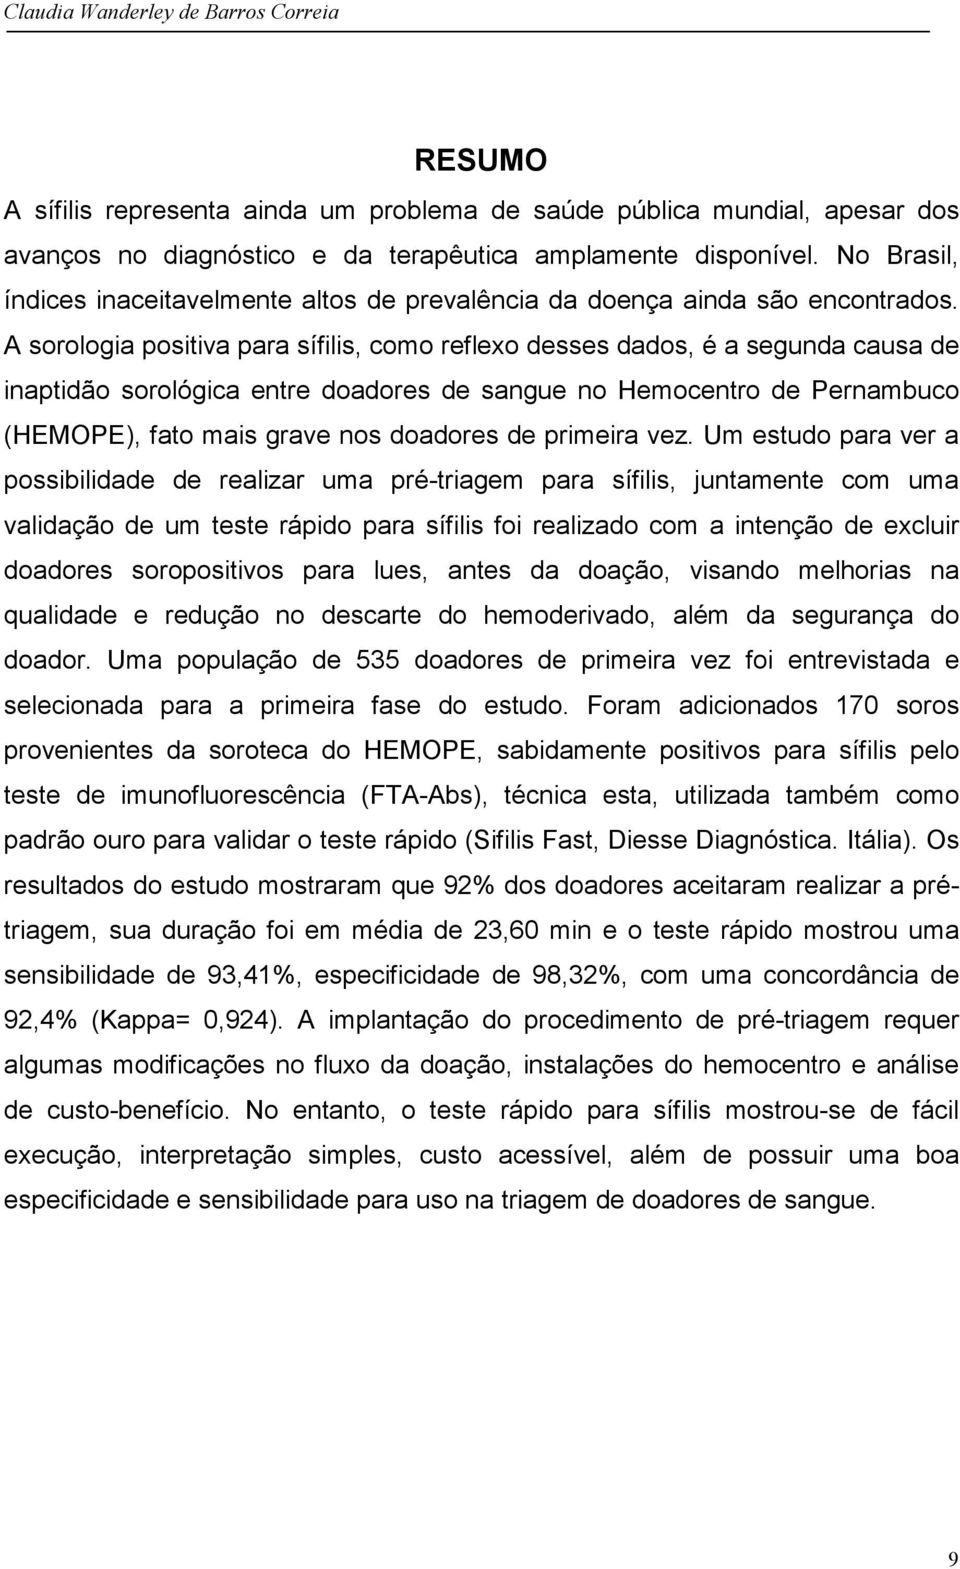 A sorologia positiva para sífilis, como reflexo desses dados, é a segunda causa de inaptidão sorológica entre doadores de sangue no Hemocentro de Pernambuco (HEMOPE), fato mais grave nos doadores de